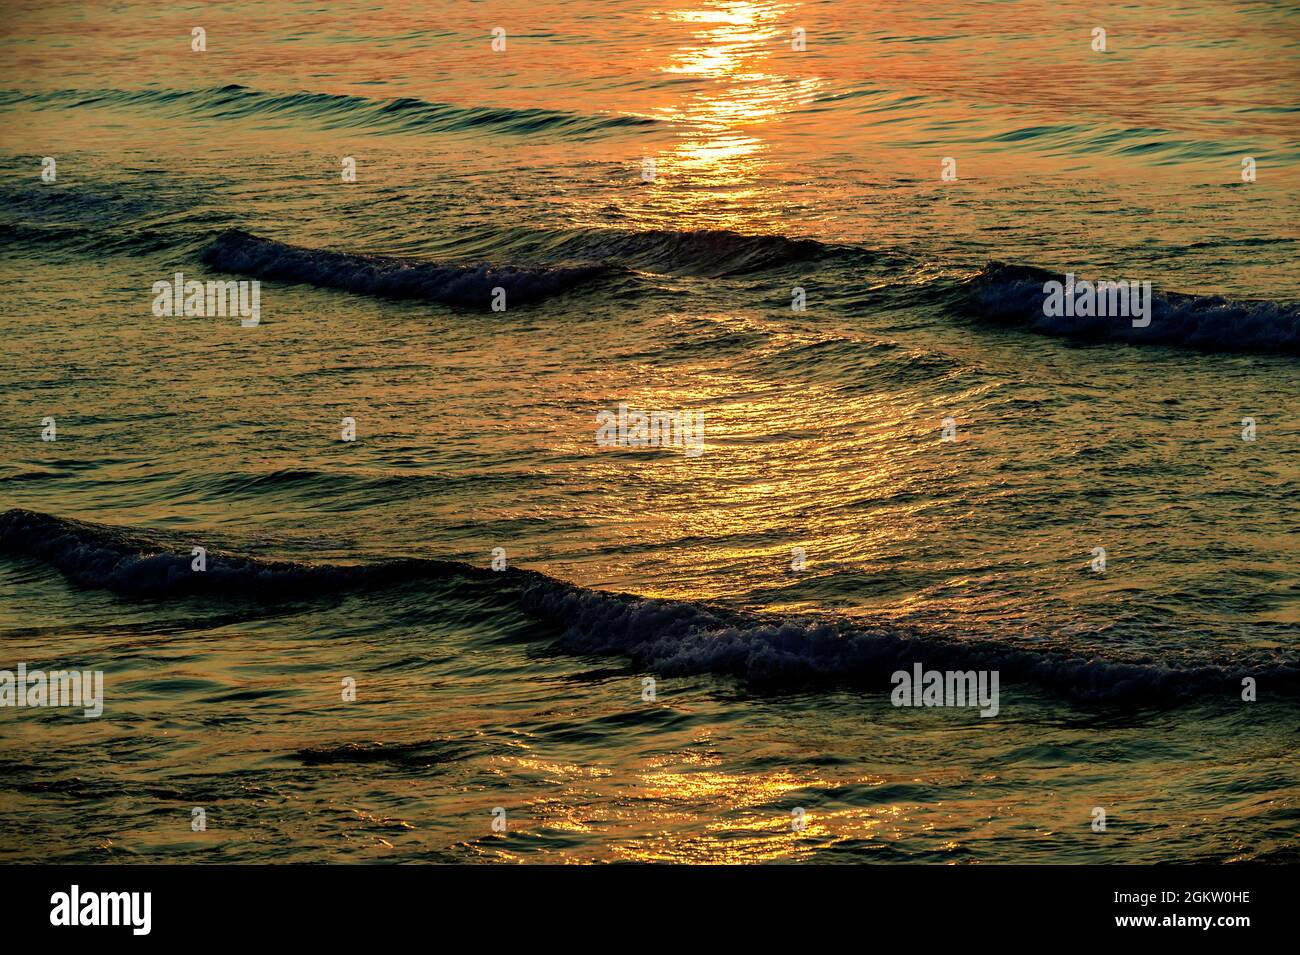 El sol naciente arrojó su luz reflejada a través de las olas, y ondulaciones de la marea entrante del océano. Al igual que crea diseños abstractos. Foto de stock